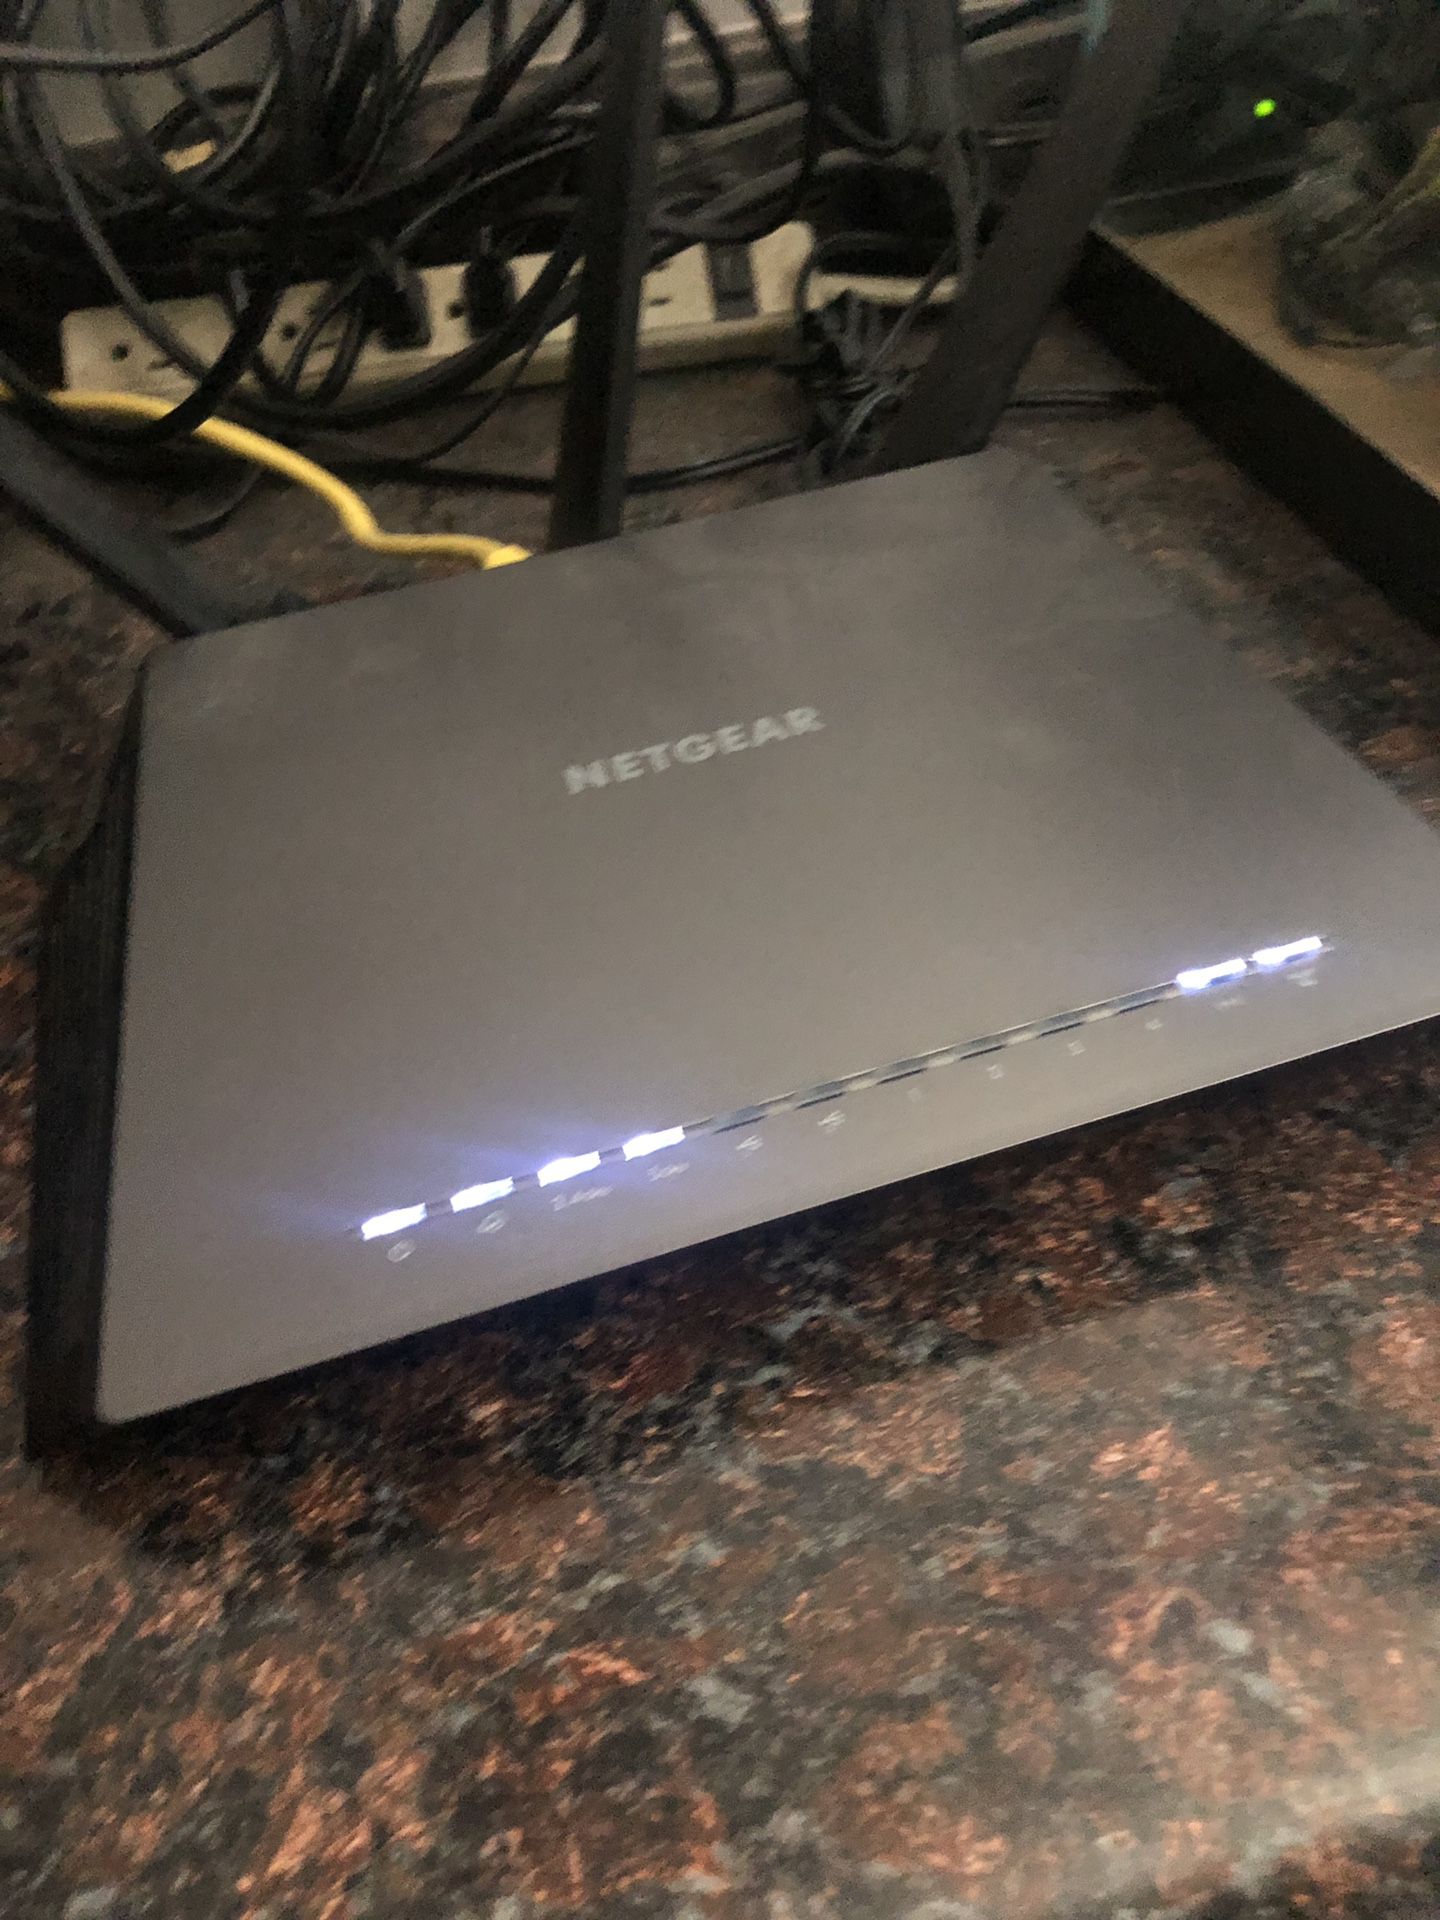 Netgear smart router